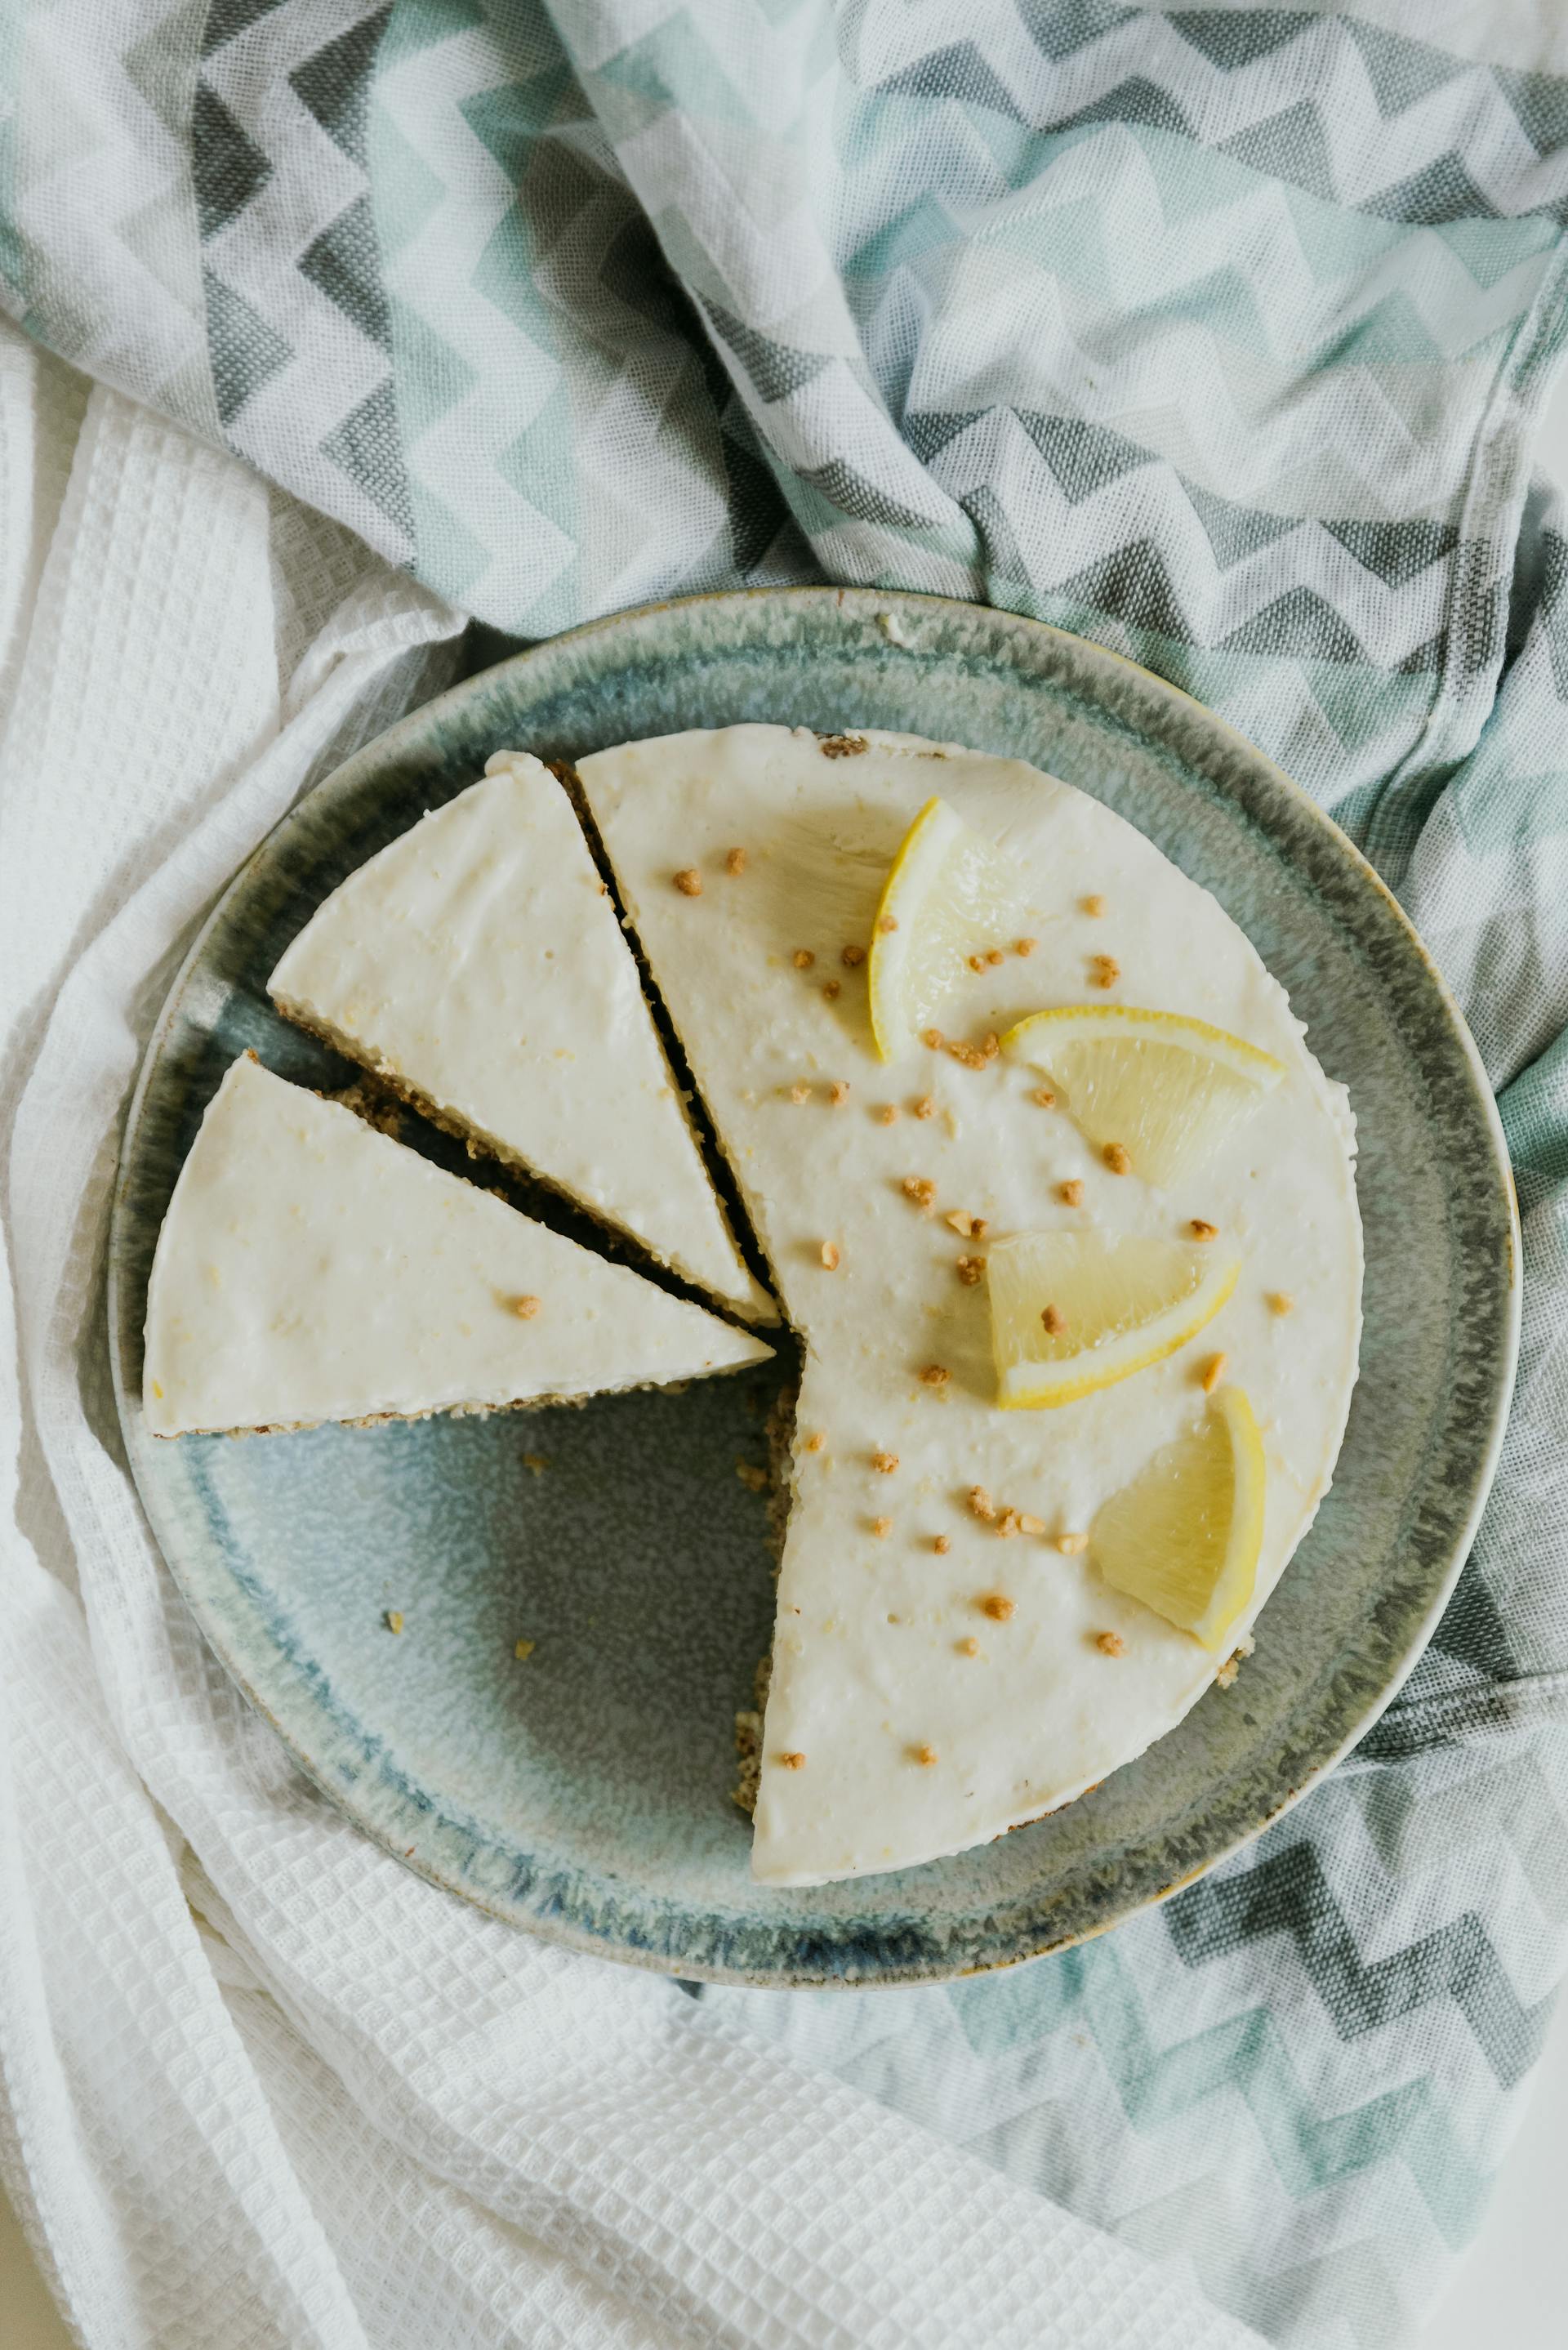 Gâteau au fromage au citron sur une assiette | Source : Pexels